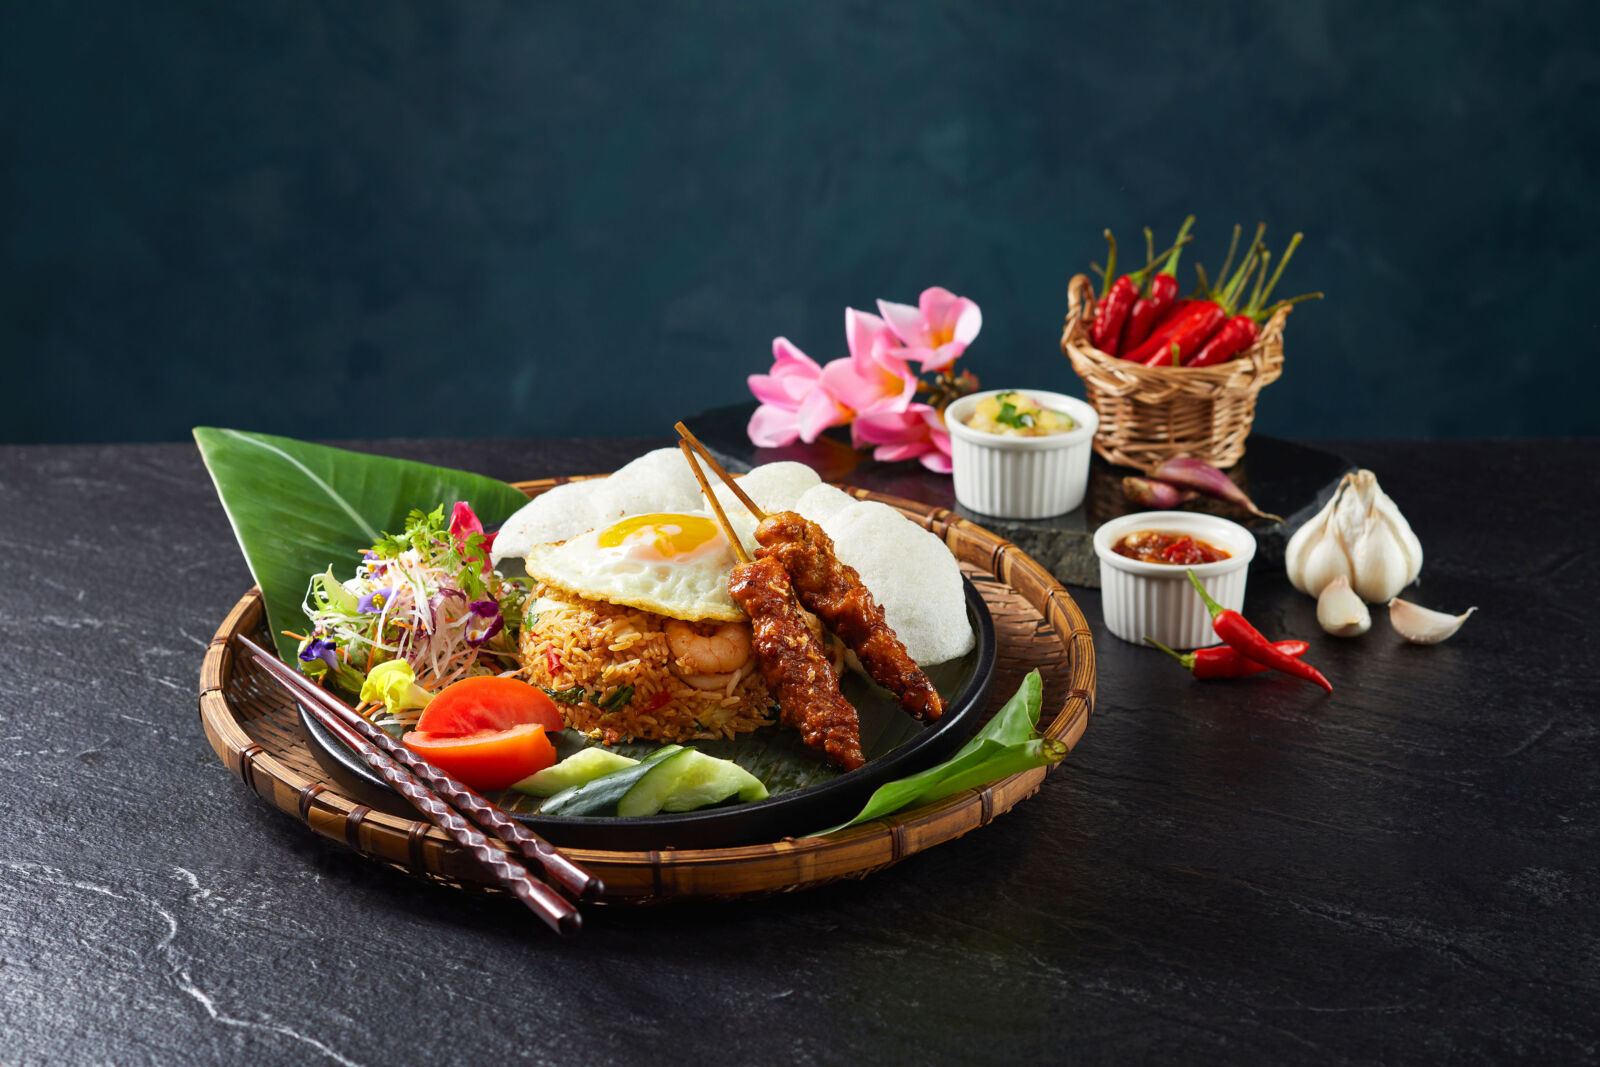 【有影】Asia49亞洲料理及酒廊迎來印尼名廚 推全新南洋榜單美食菜單 15